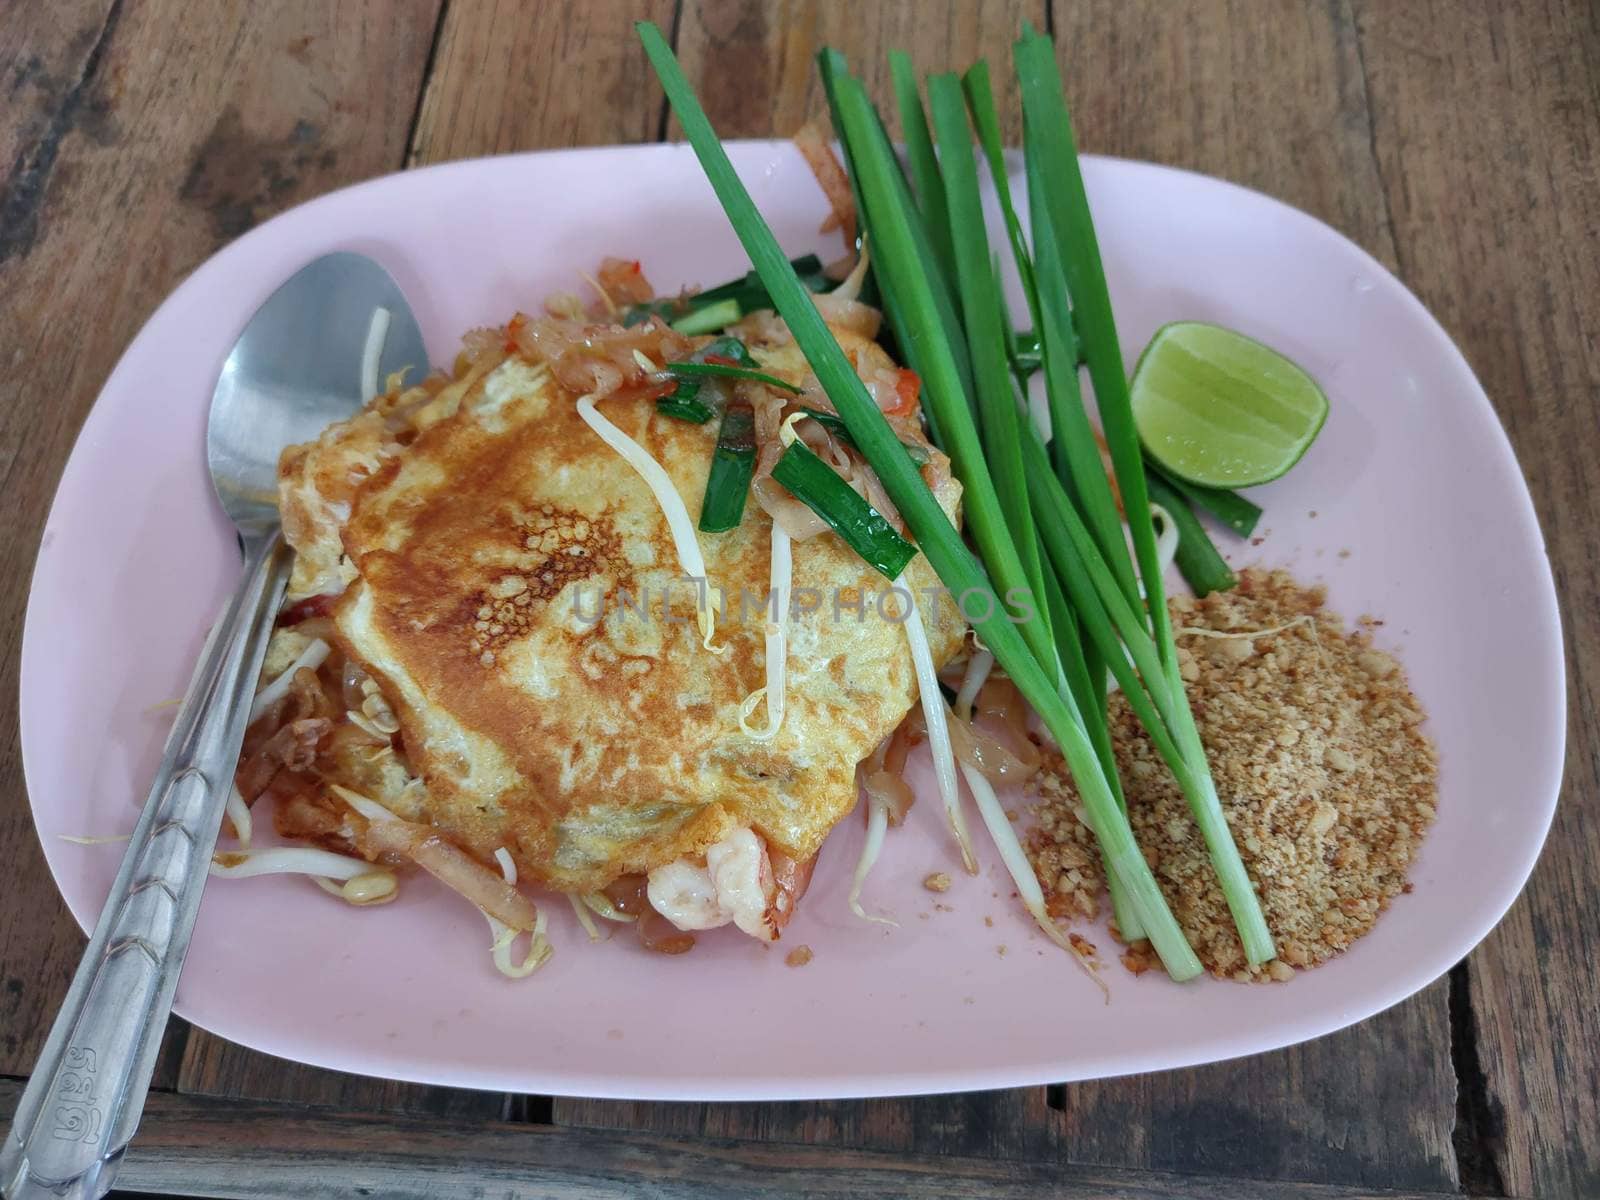 The Pad Thai on pink disk, thai food